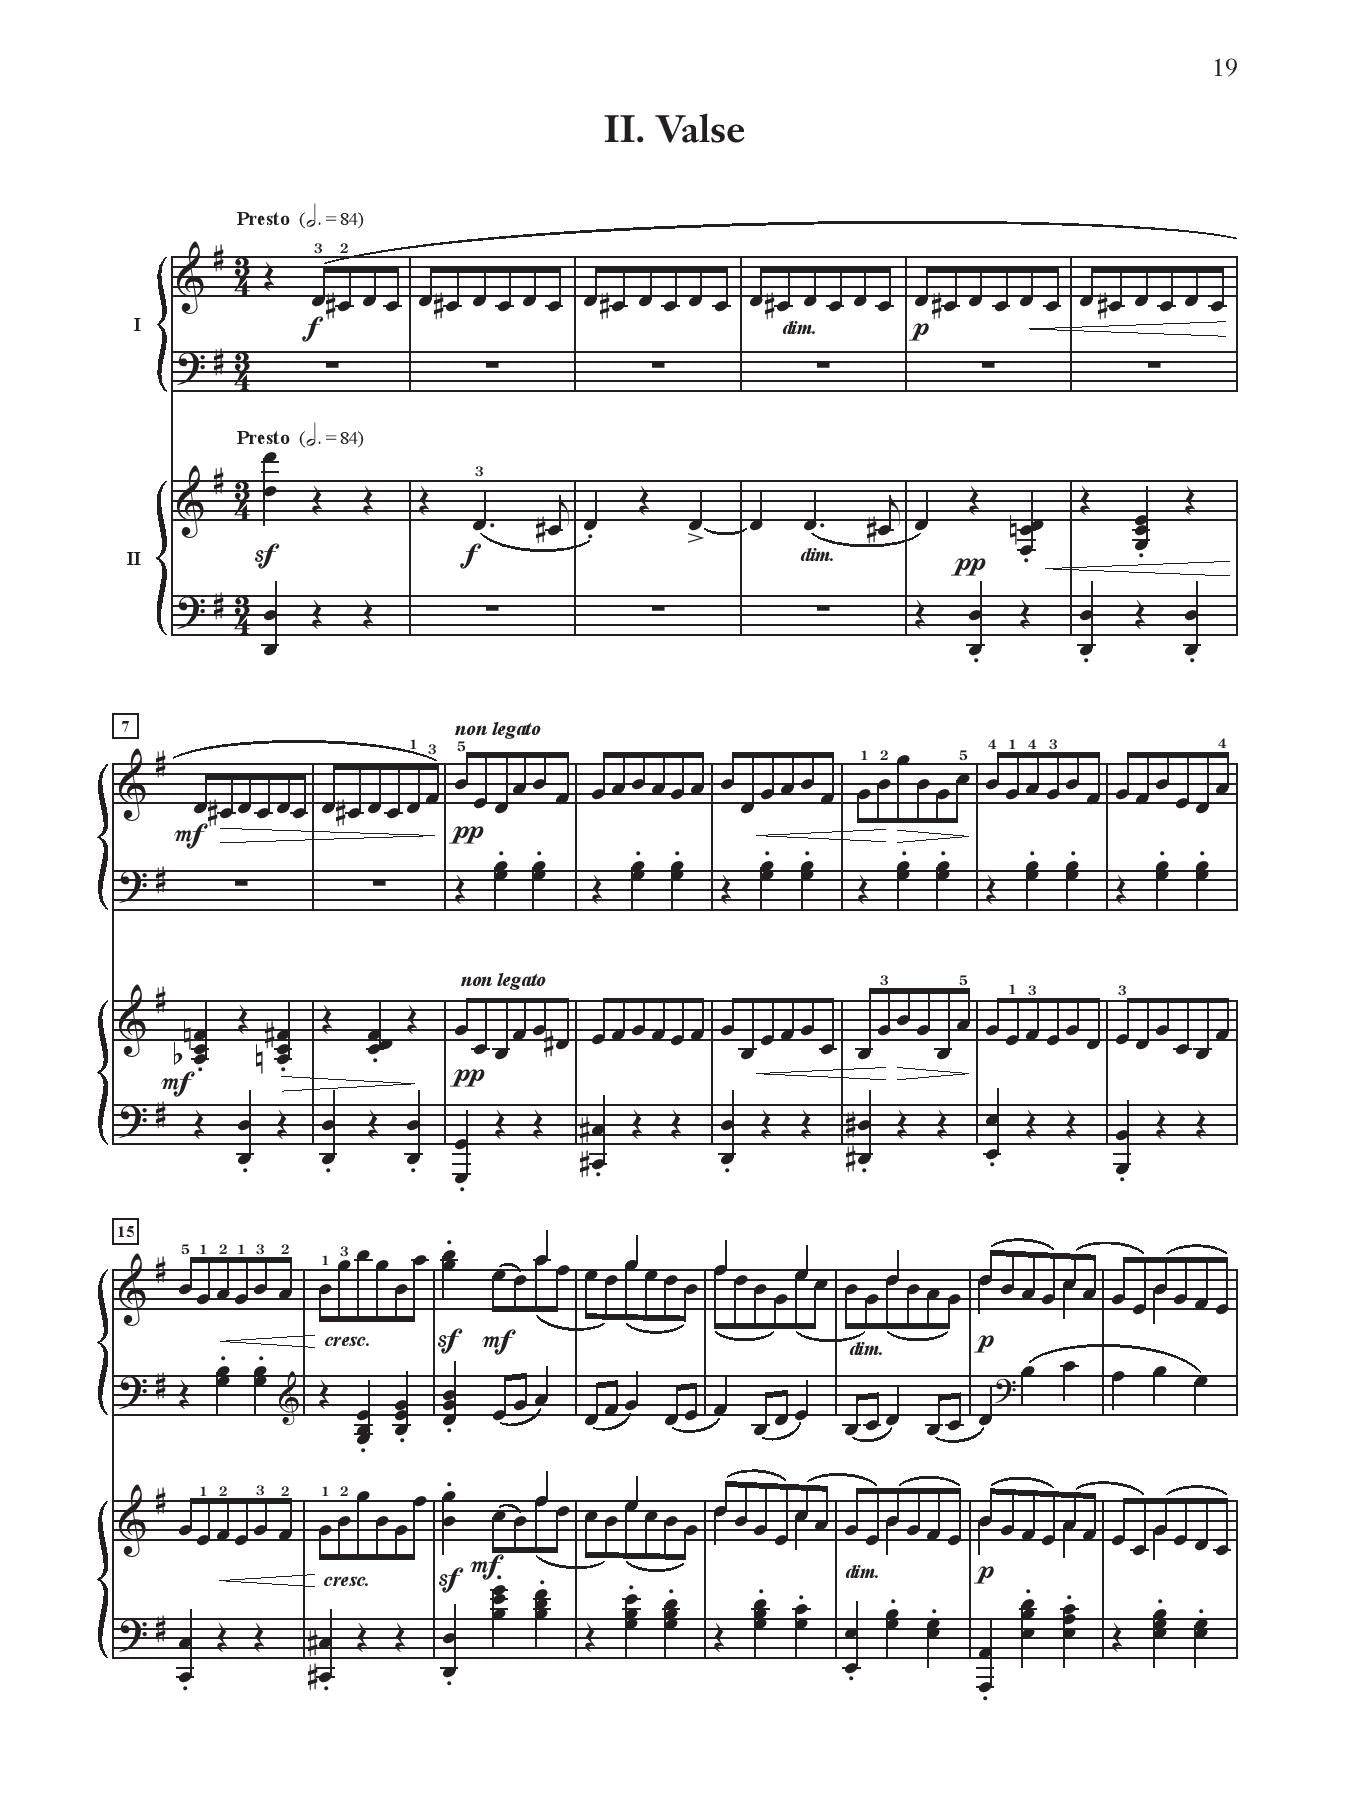 Rachmaninoff: Suite No. 2 Op. 17